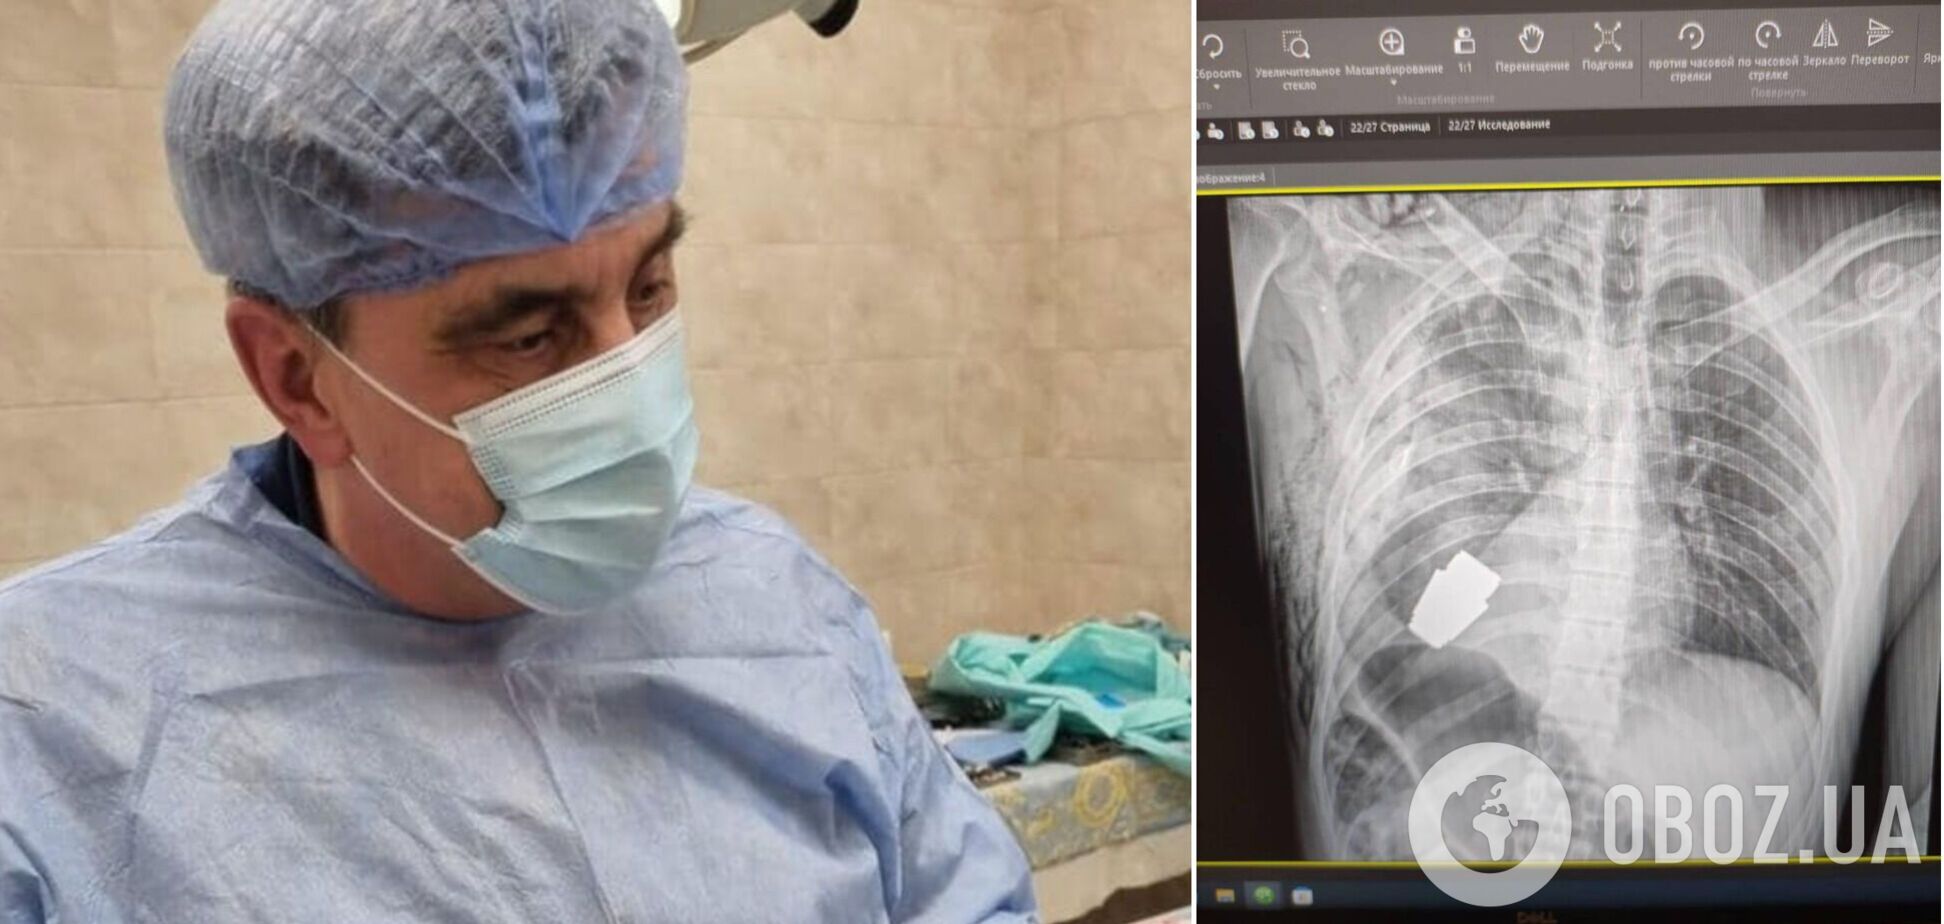 Українські хірурги провели унікальну операцію і дістали з тіла військовослужбовця гранату ВОГ, що не розірвалася. Фото